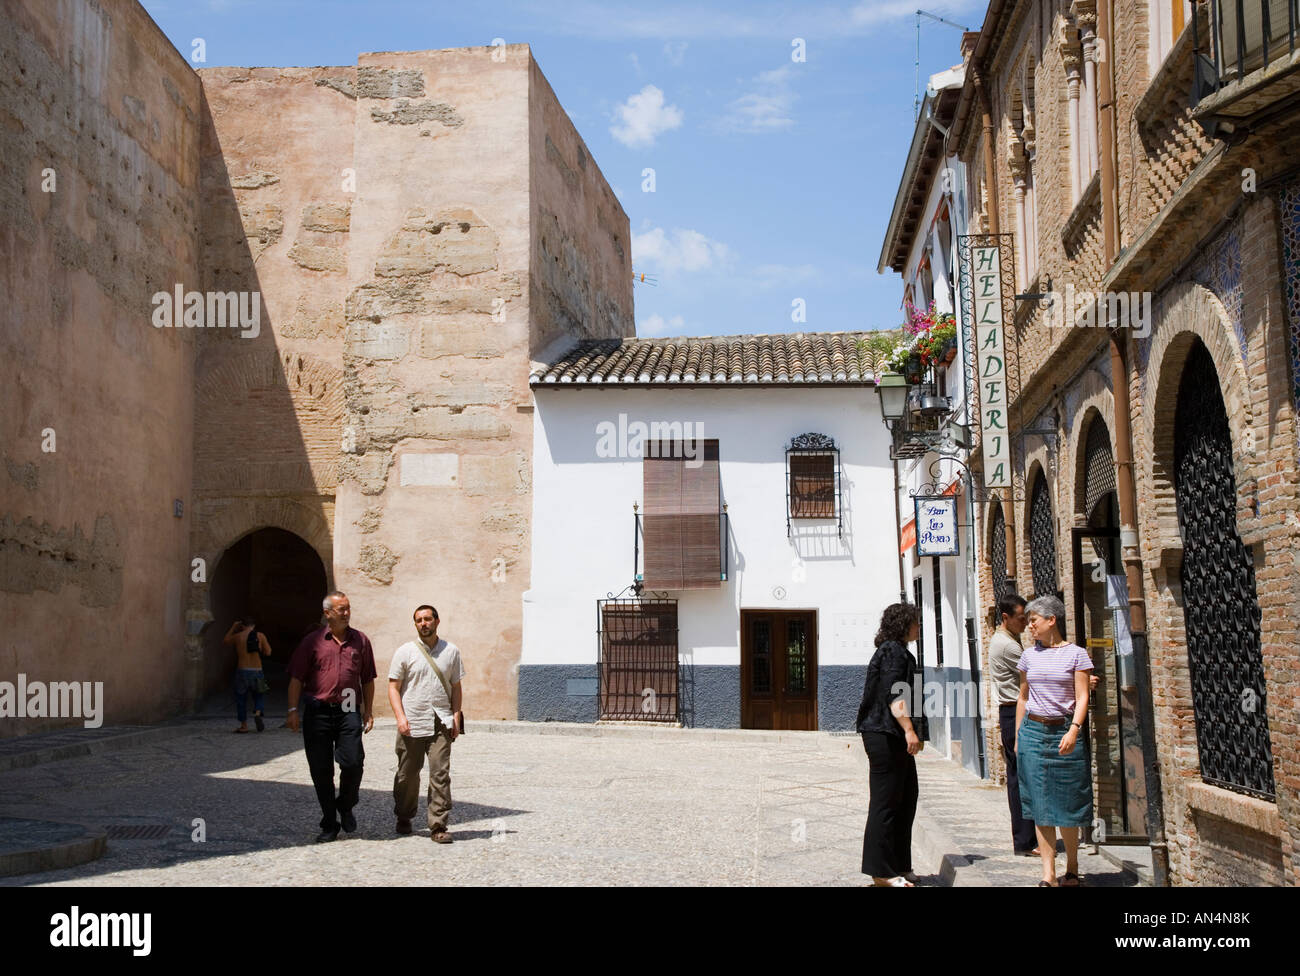 Granada Granada Province Spain Street scene in the Albayzin Stock Photo